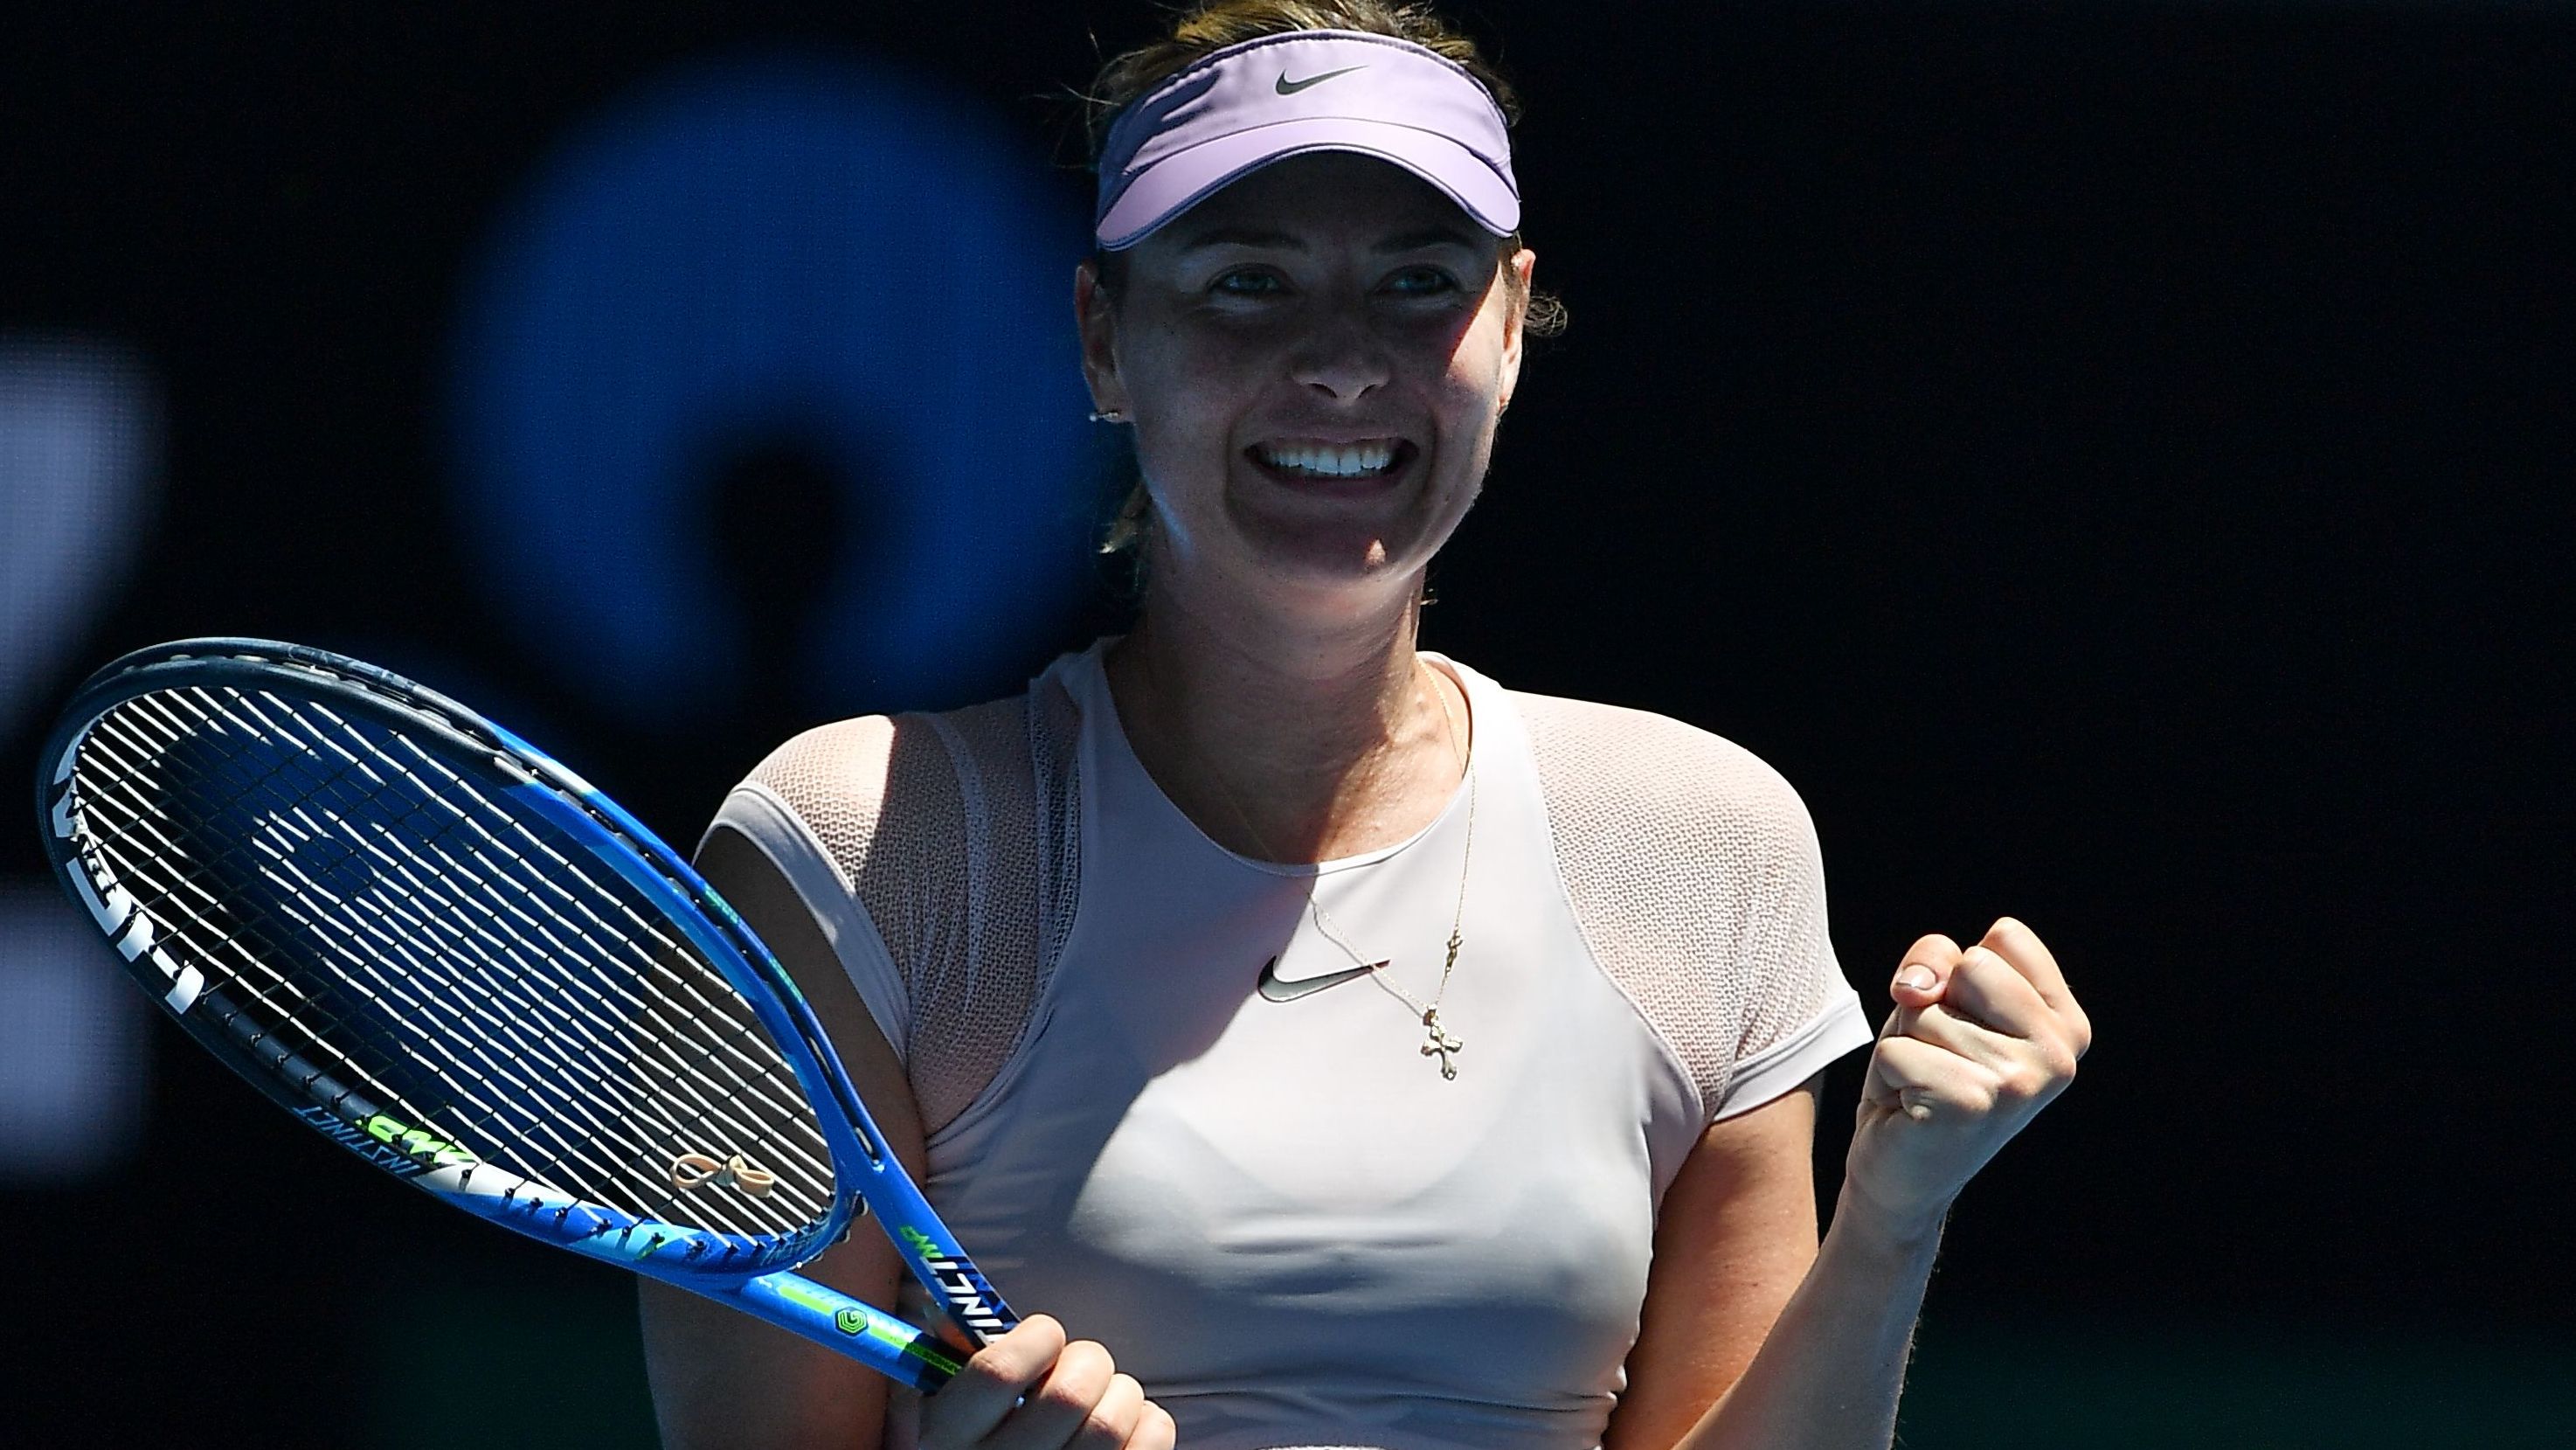 Maria Sharapova wants ‘big stage winning feel again’ | CNN